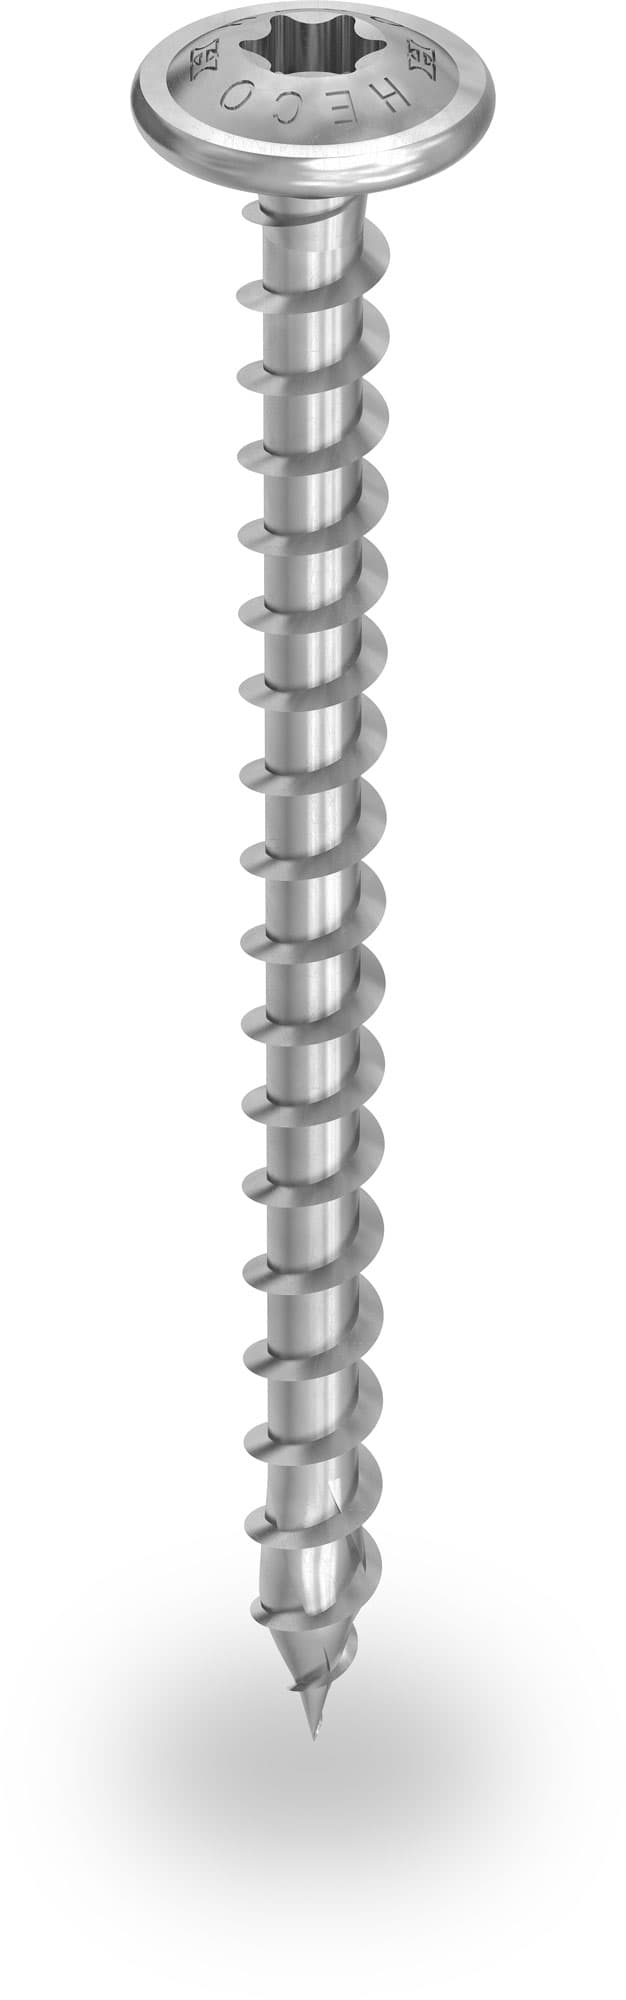 Self-drilling wood screw Ø 8,0 mm